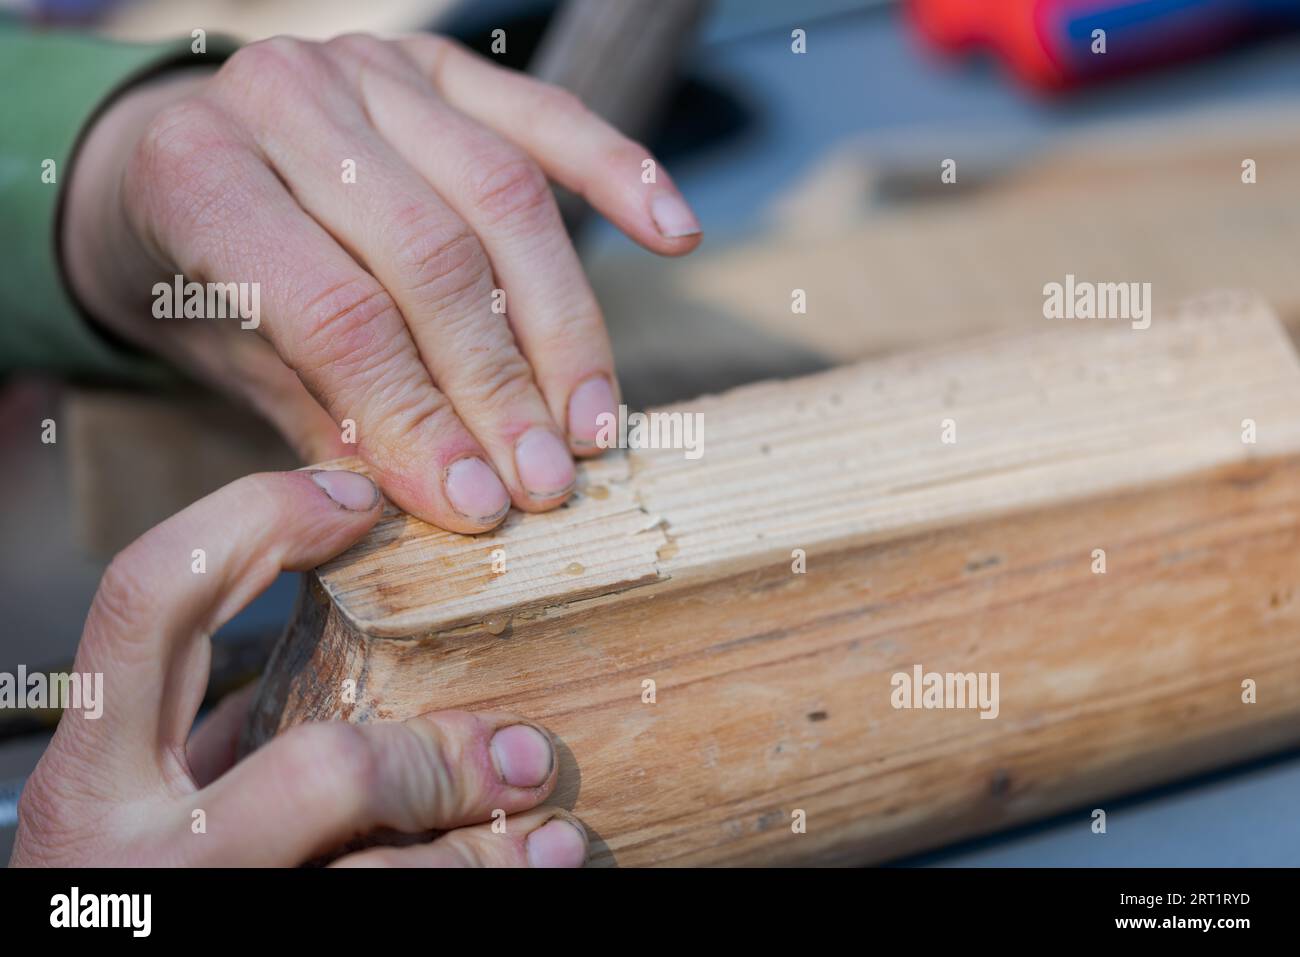 Mains humaines appuyant sur deux pièces de vieux meubles en bois qui ont été collées avec de la colle d'os Banque D'Images